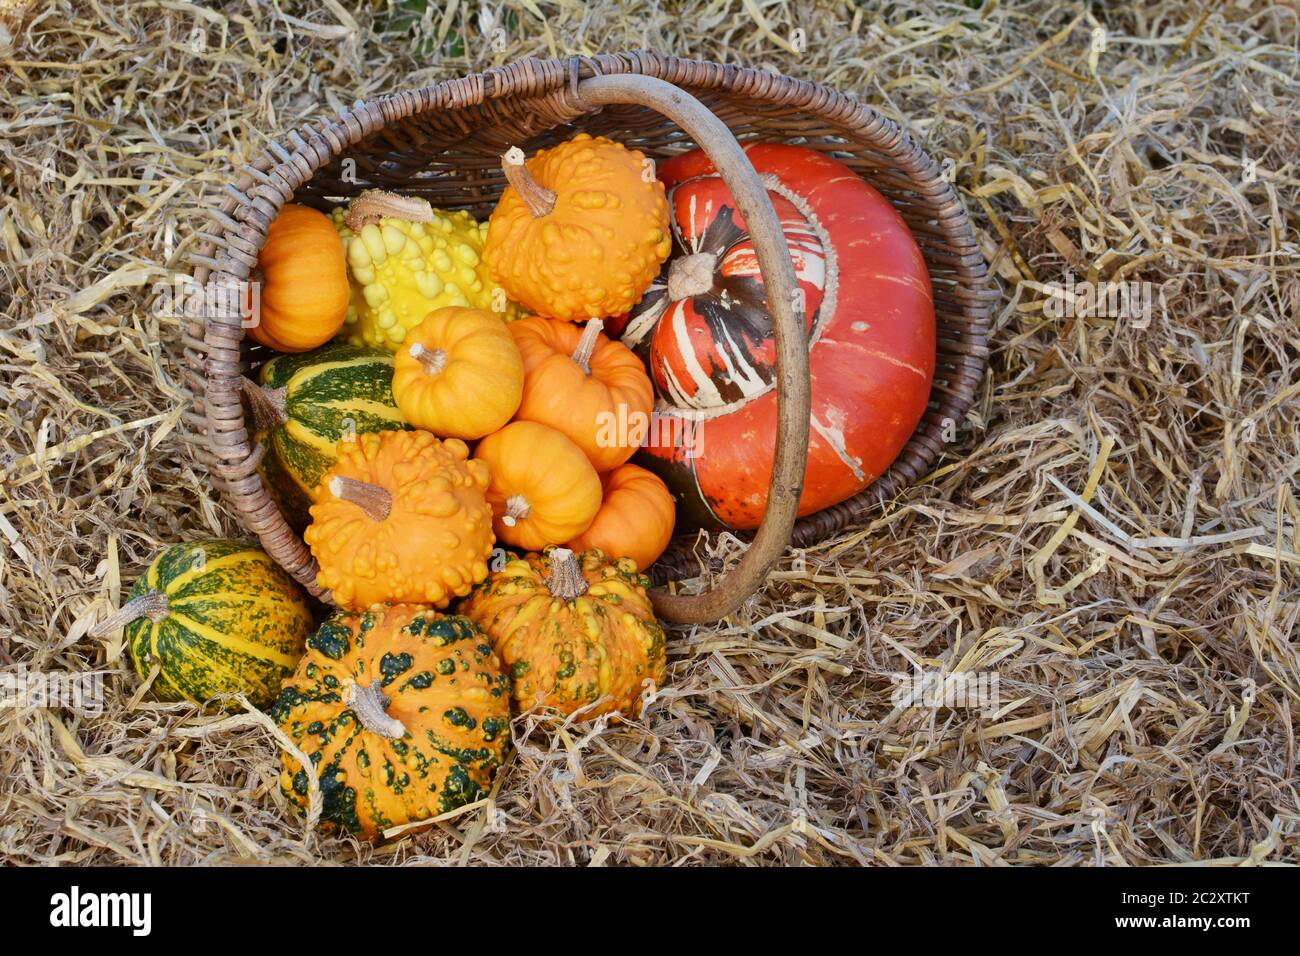 Cesto rustico di piccole warted zucche con un turban gourd riversandosi su un letto di paglia in autunno Foto Stock